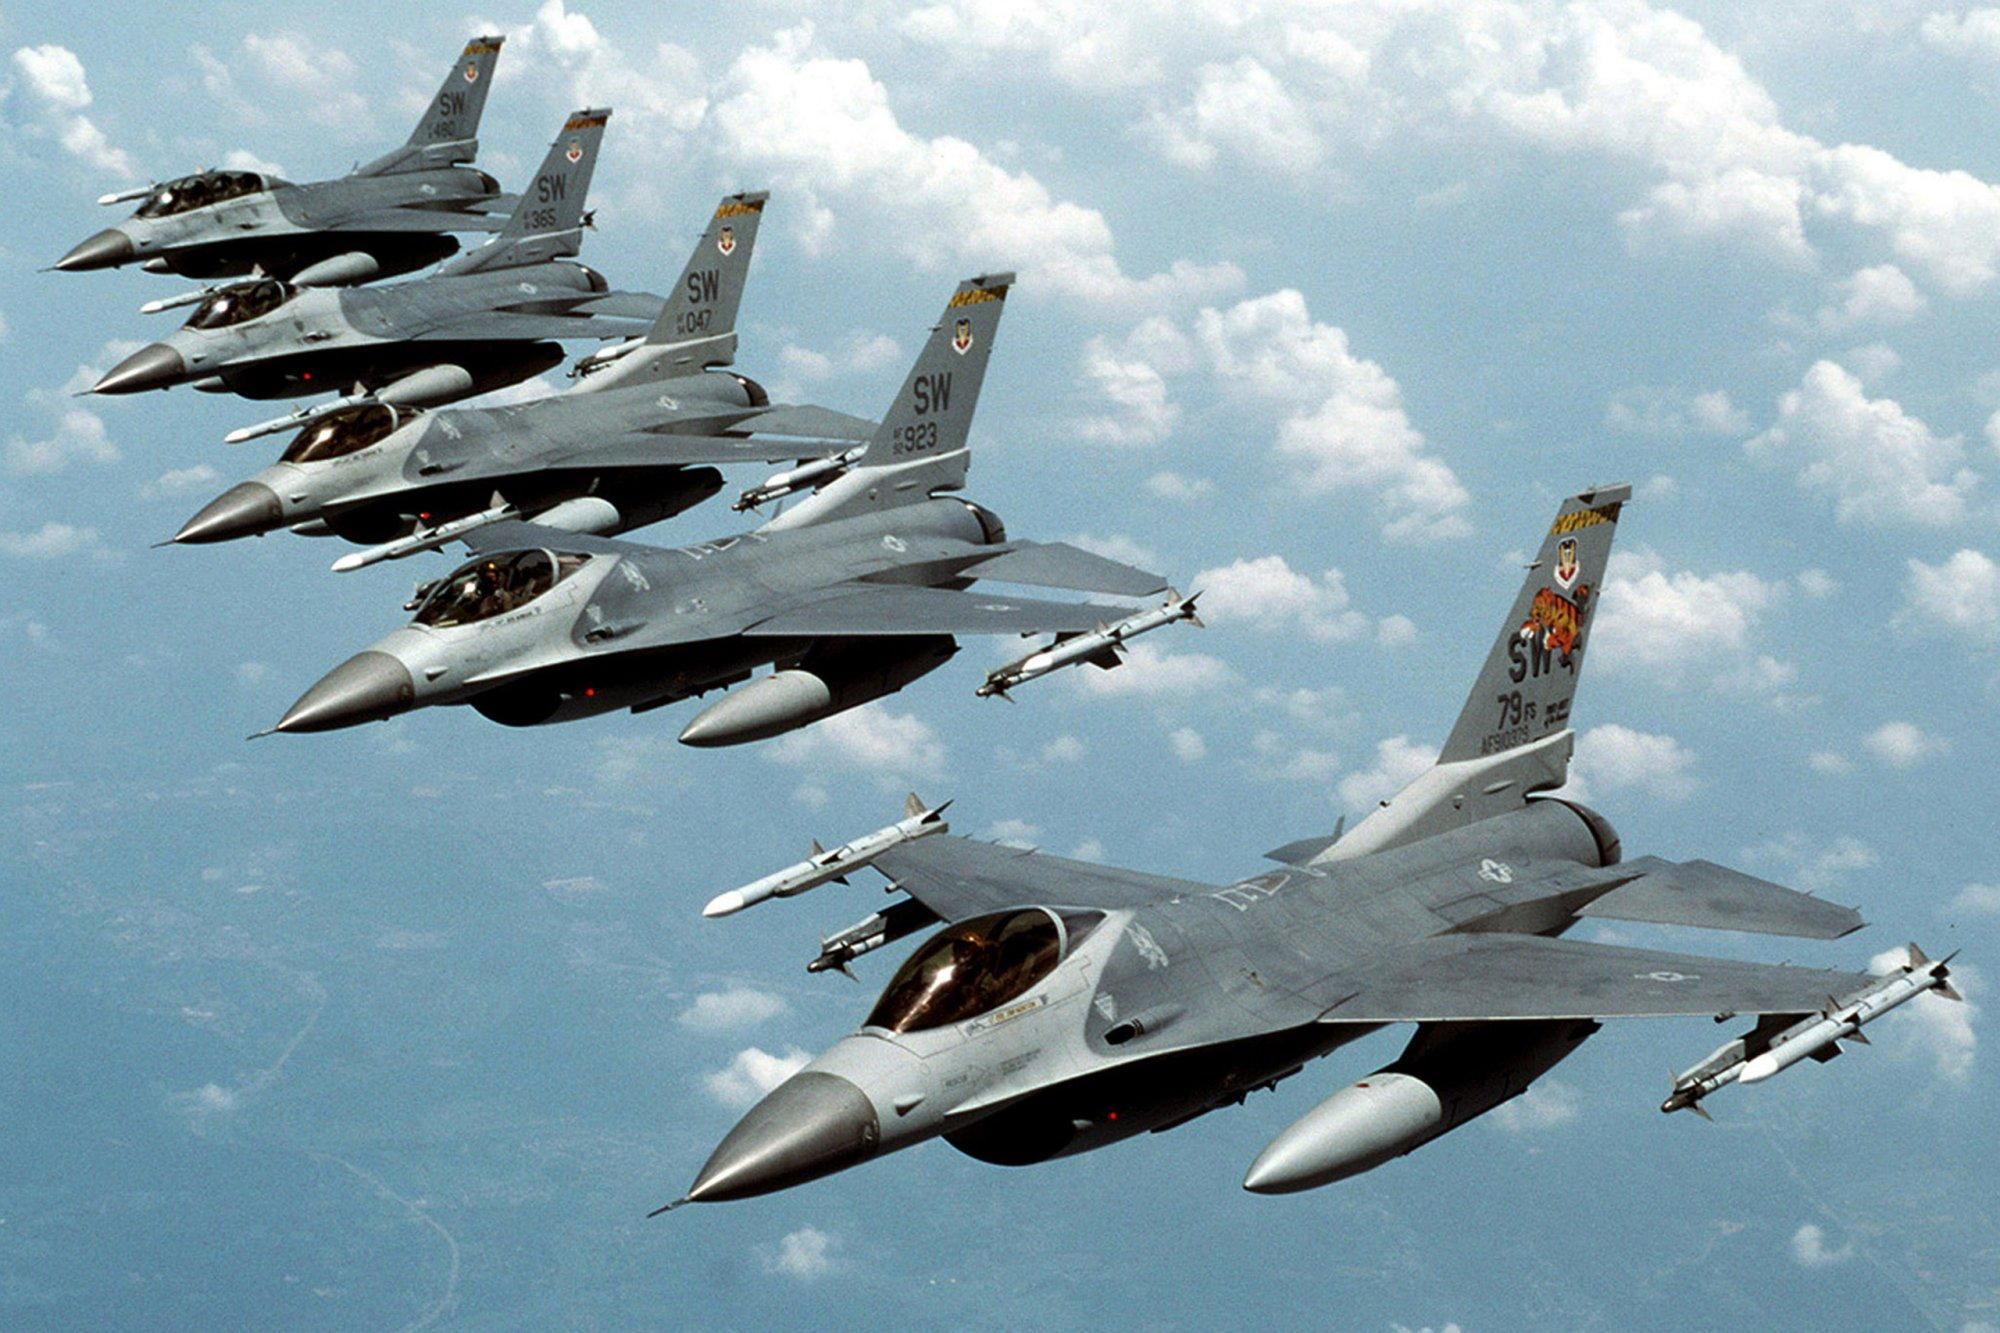 Военные самолеты крыма. Ф 16 истребитель. F 16 Falcon. General Dynamics f-16. General Dynamics f-16 Fighting Falcon.